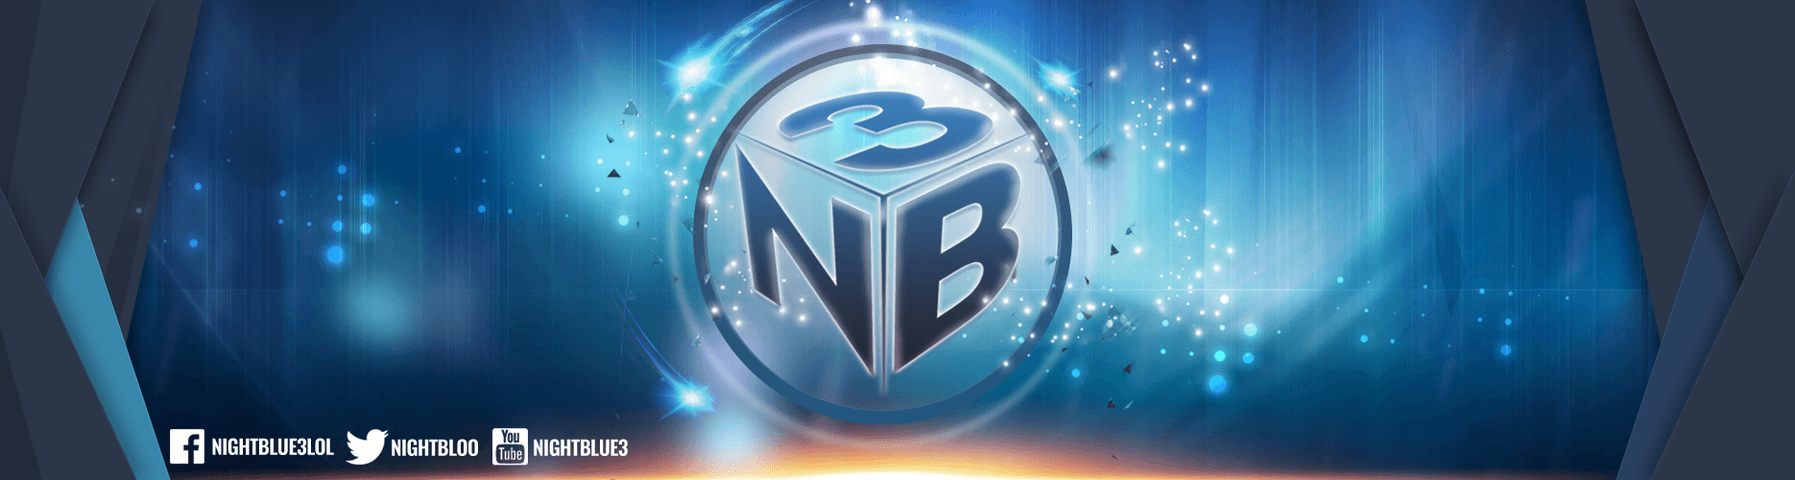 NB3 Logo - Nightblue3 - Twitch